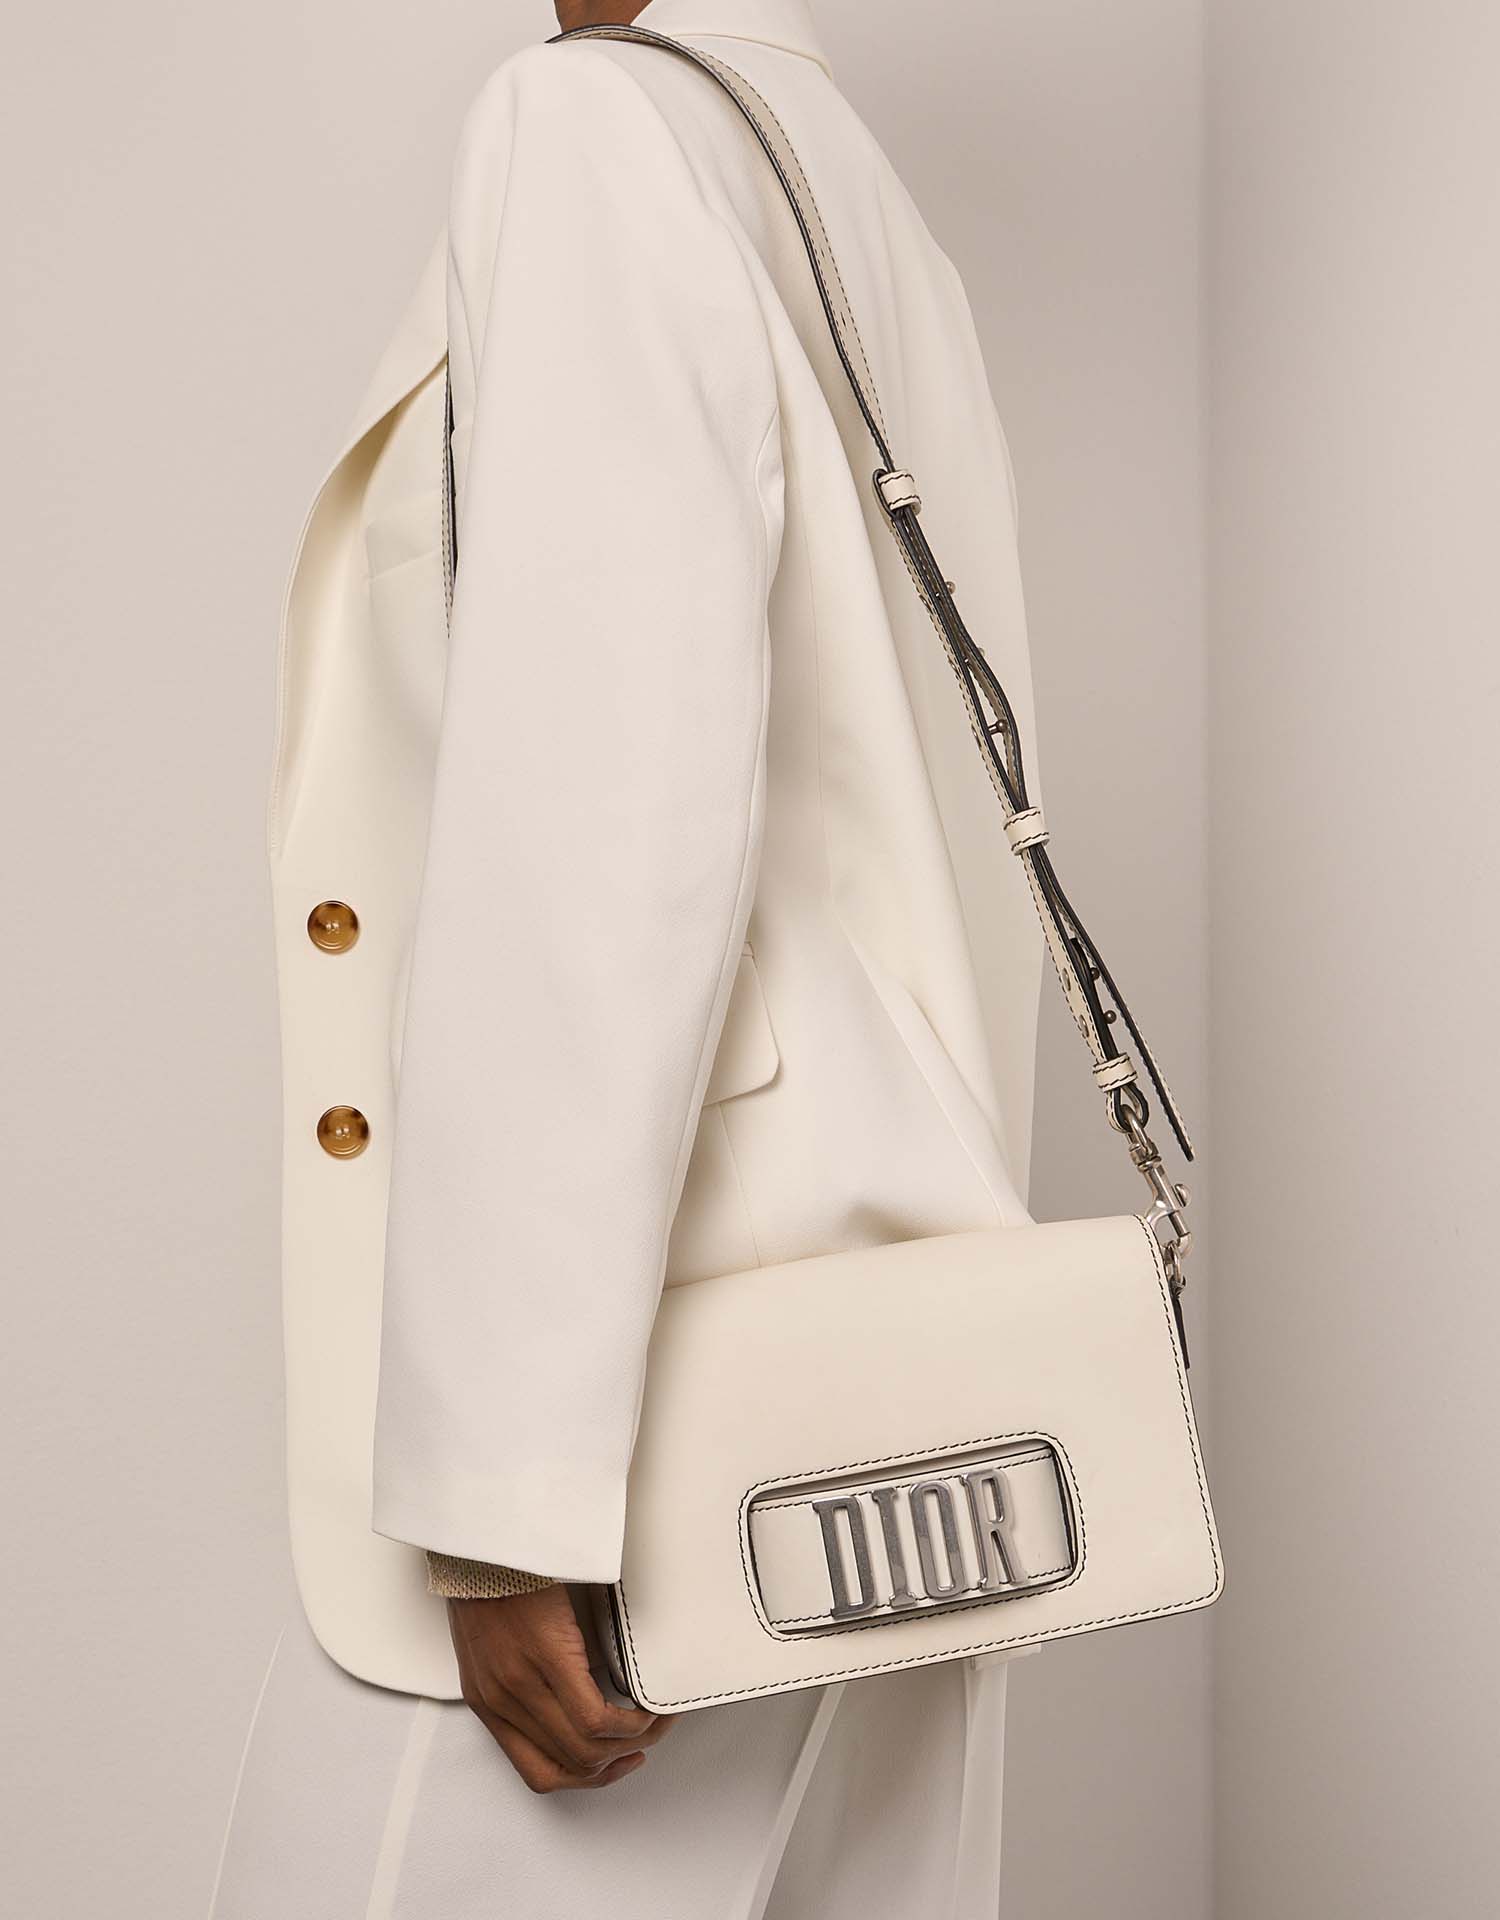 Sac Dior d'occasion Dio(r)evolution Veau Blanc Blanc Modèle | Vendez votre sac de créateur sur Saclab.com